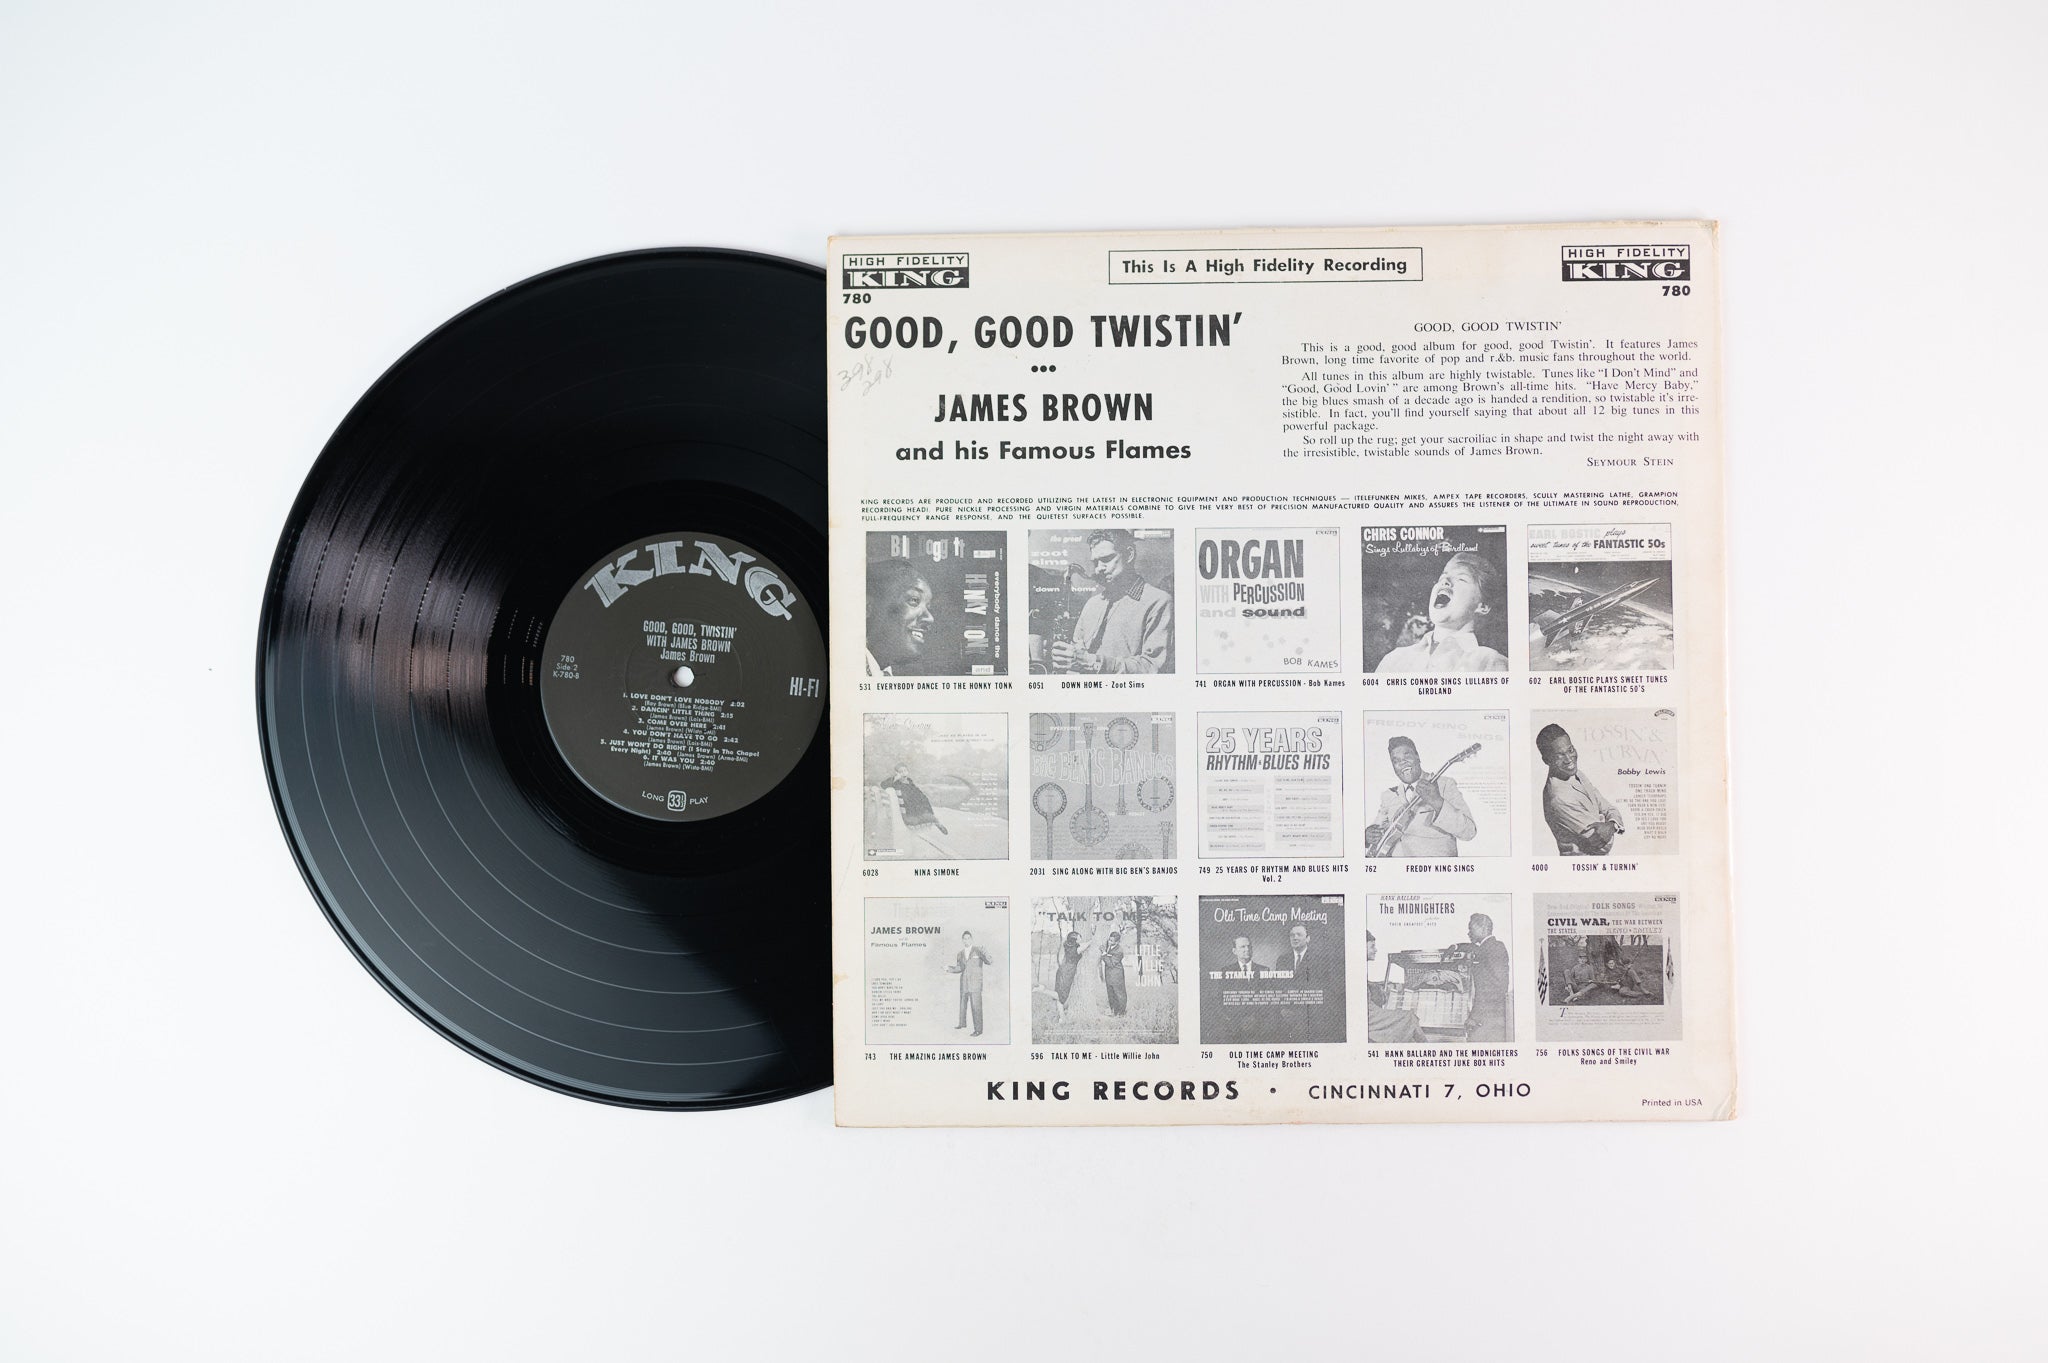 James Brown - Good, Good, Twistin' With James Brown on King 780